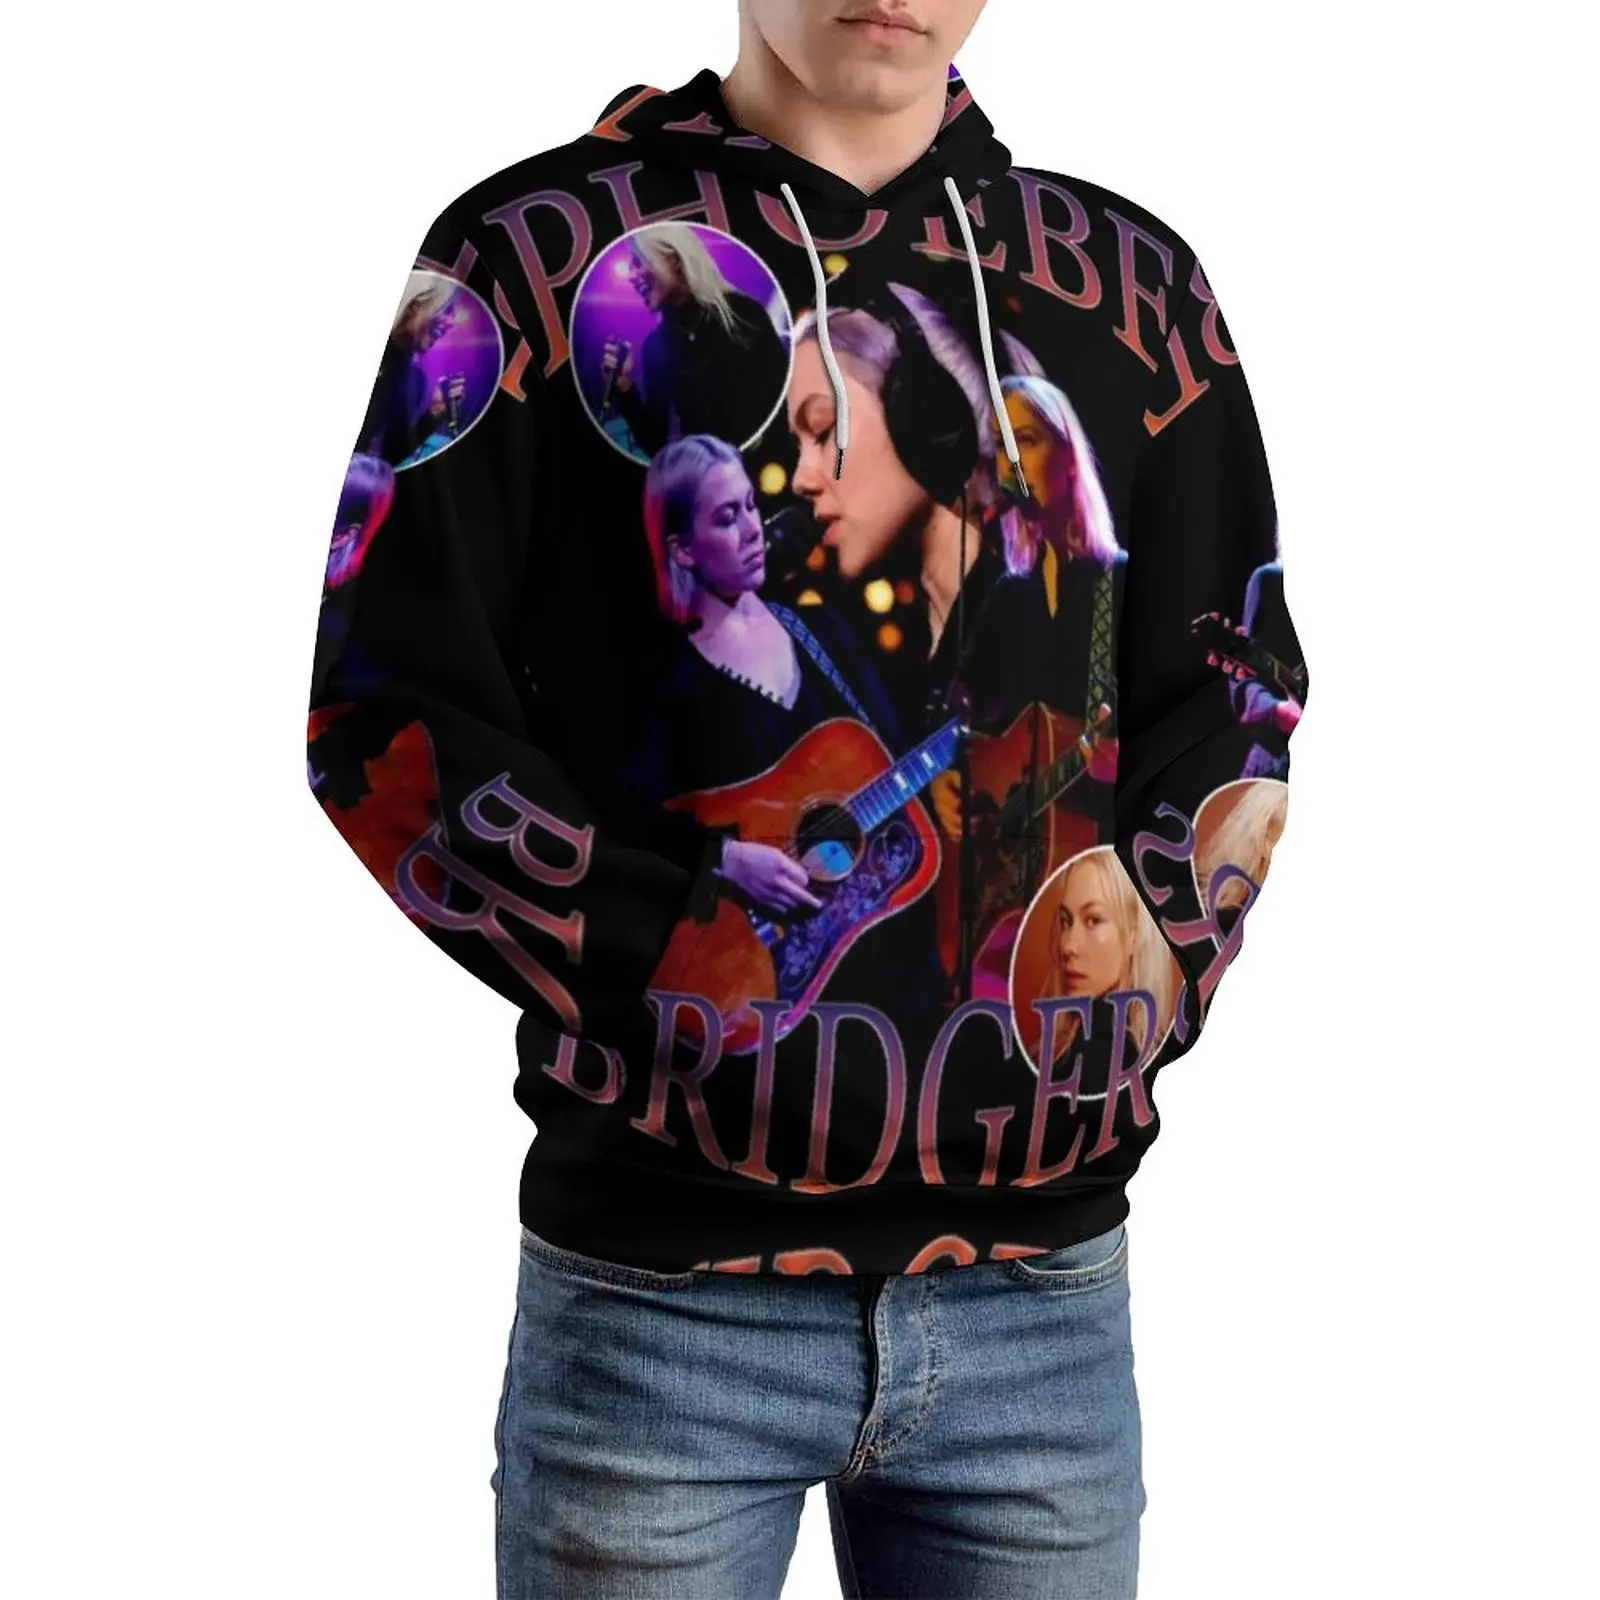 

Phoebe Bridgers Casual Hoodies Long Sleeve Music Homage Y2k Pullover Hoodie Winter Street Style Oversized Hooded Sweatshirts